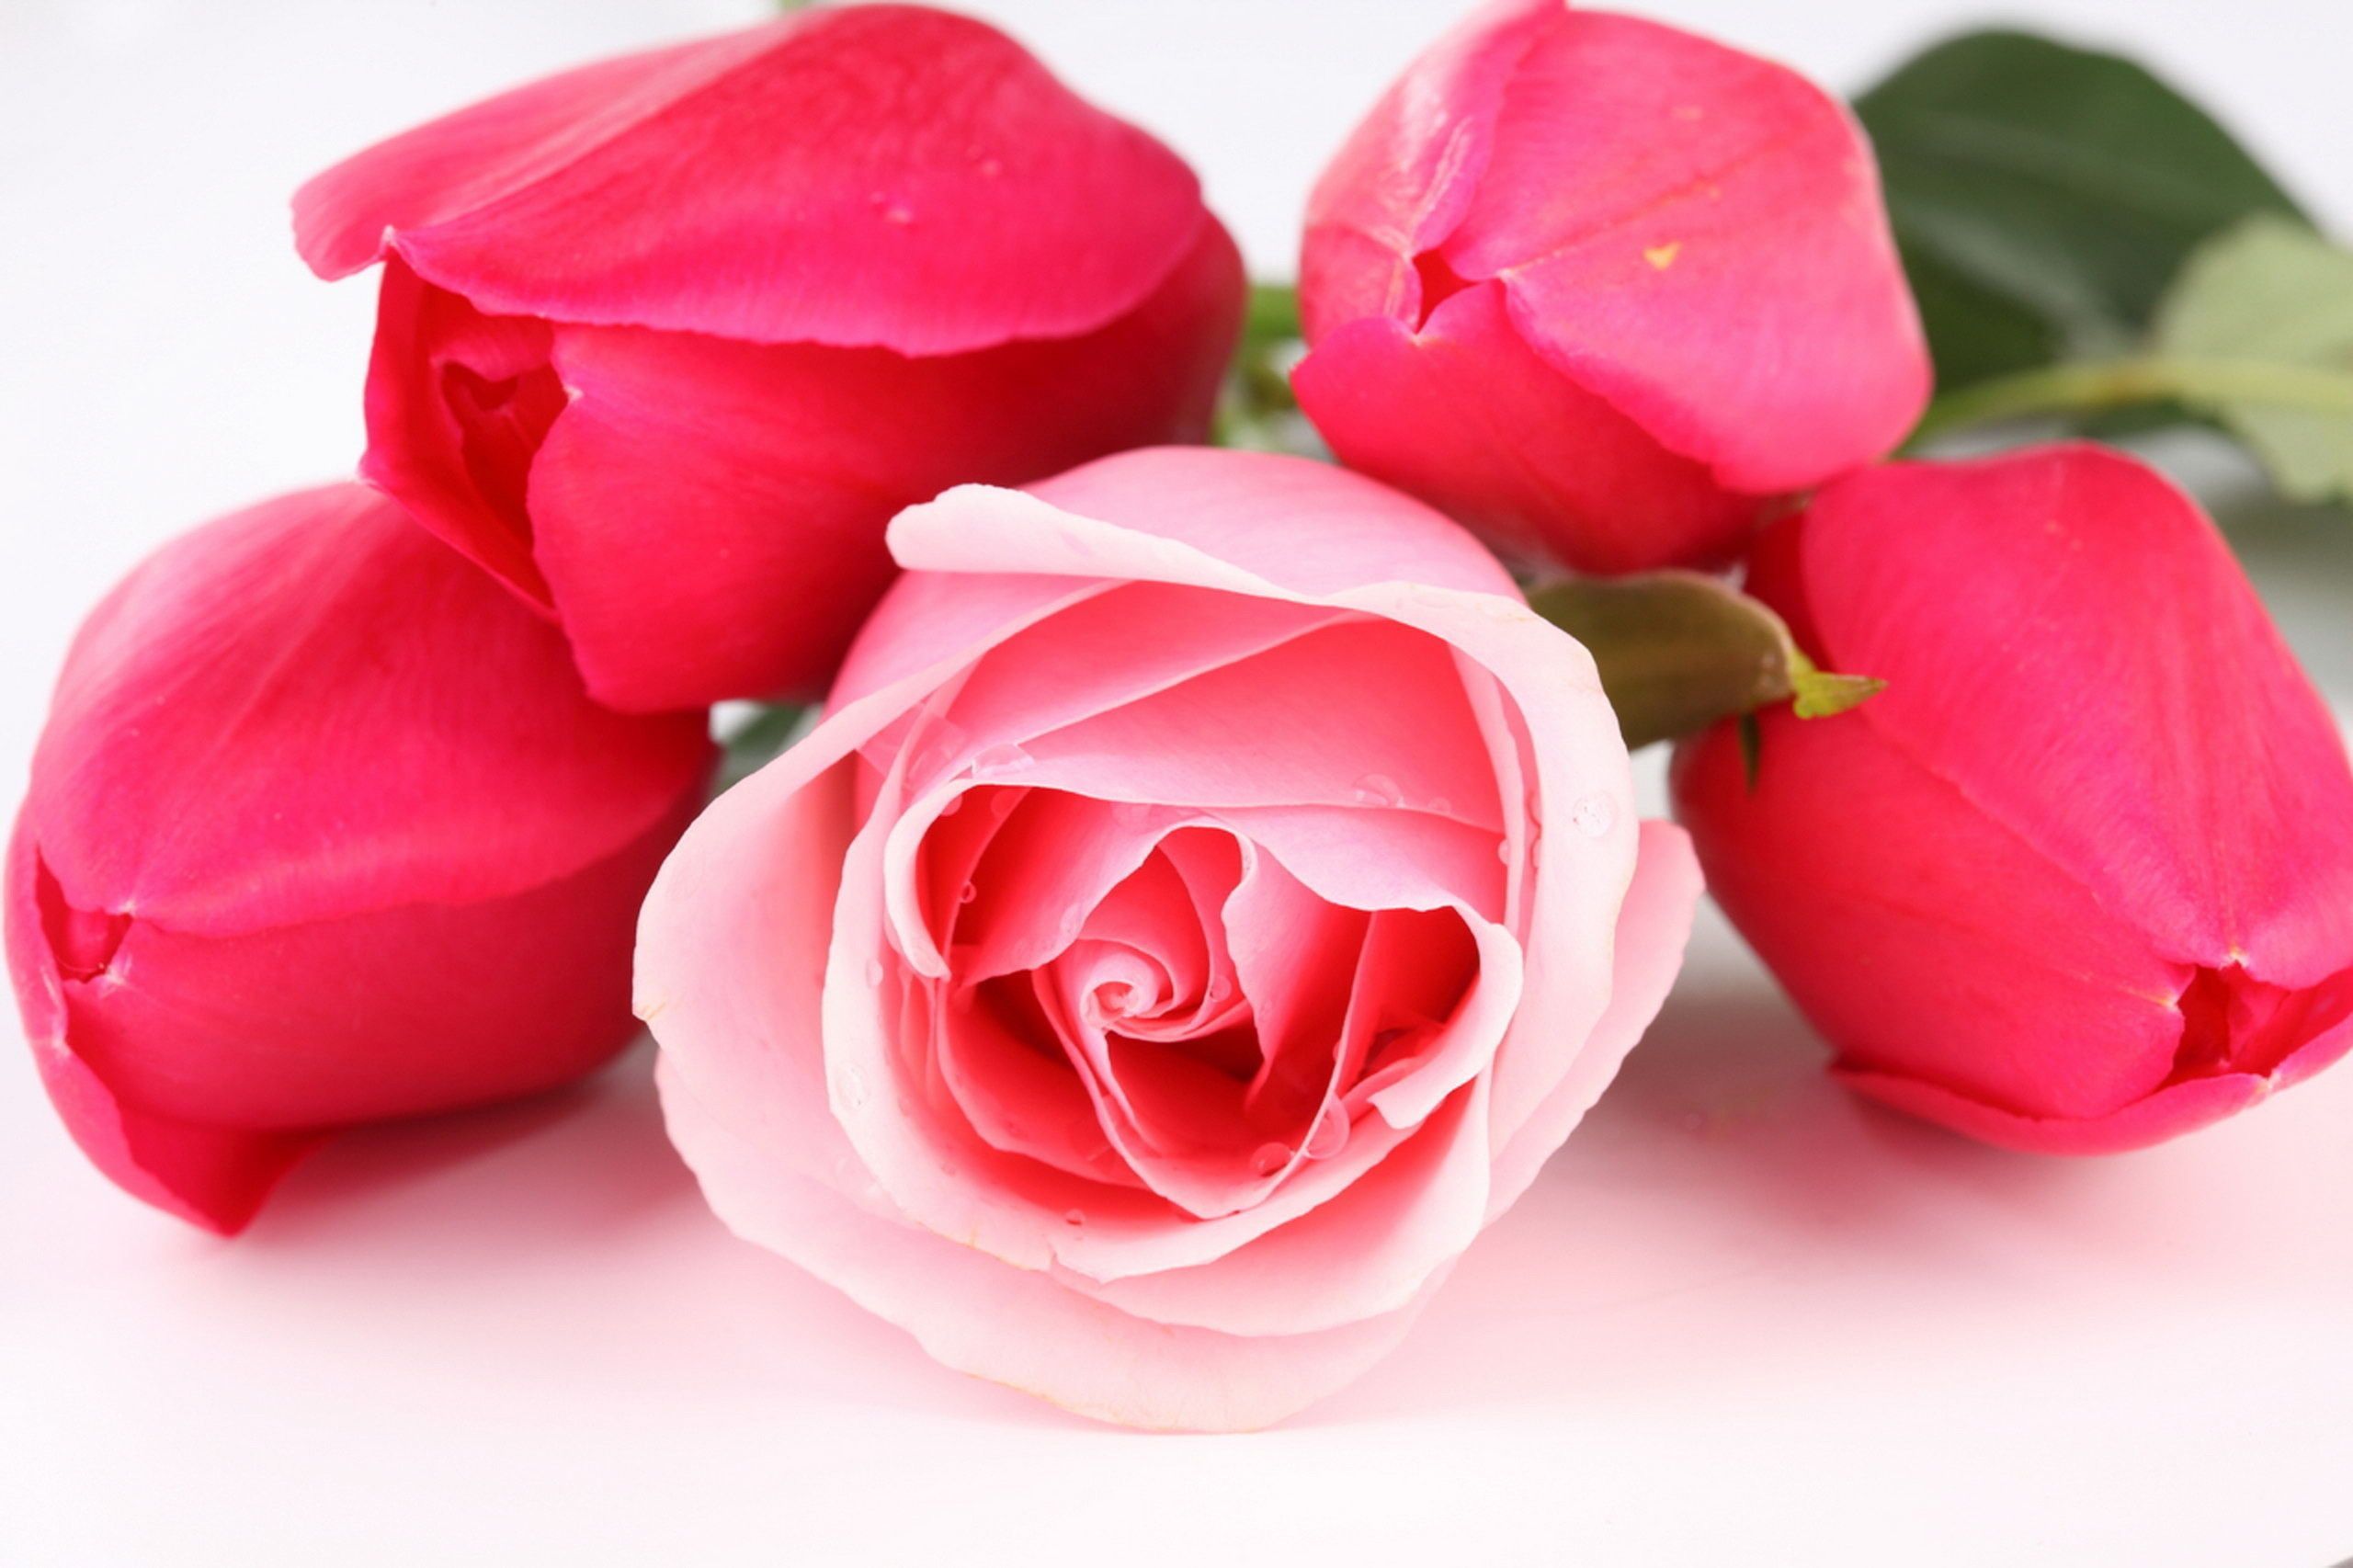 Beautiful Rose Images Hd - HD Wallpaper 